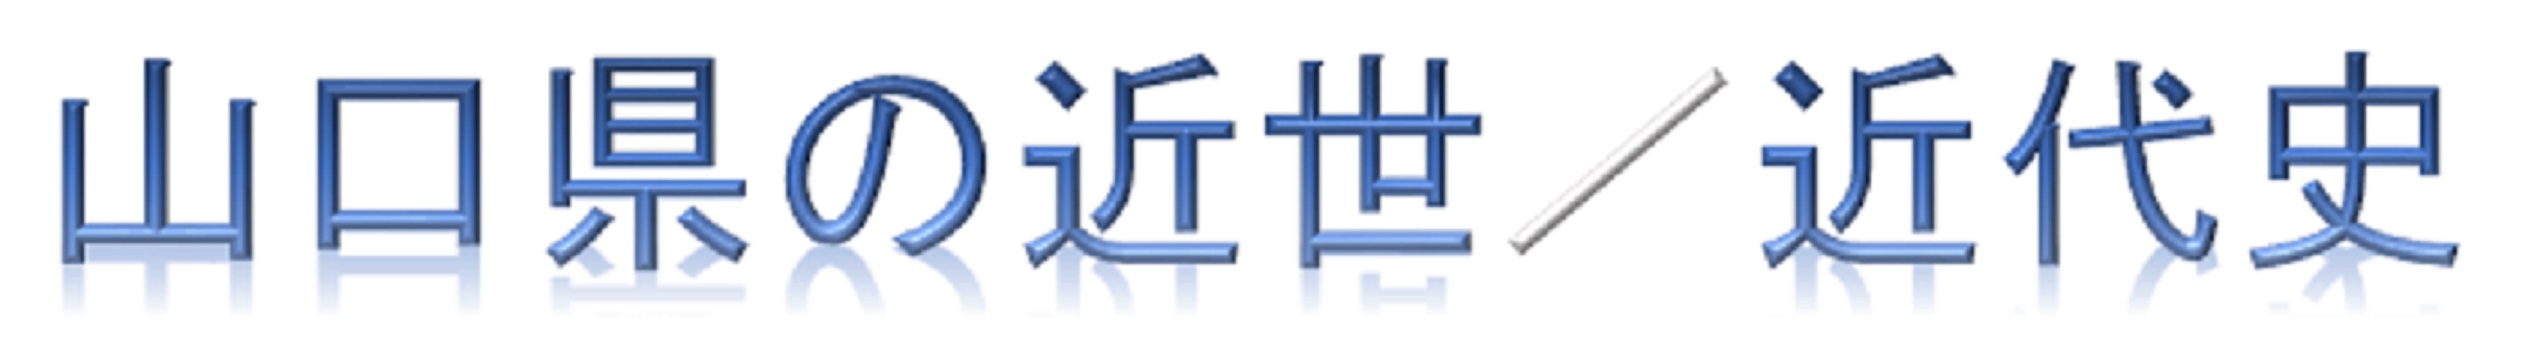 古文書logo